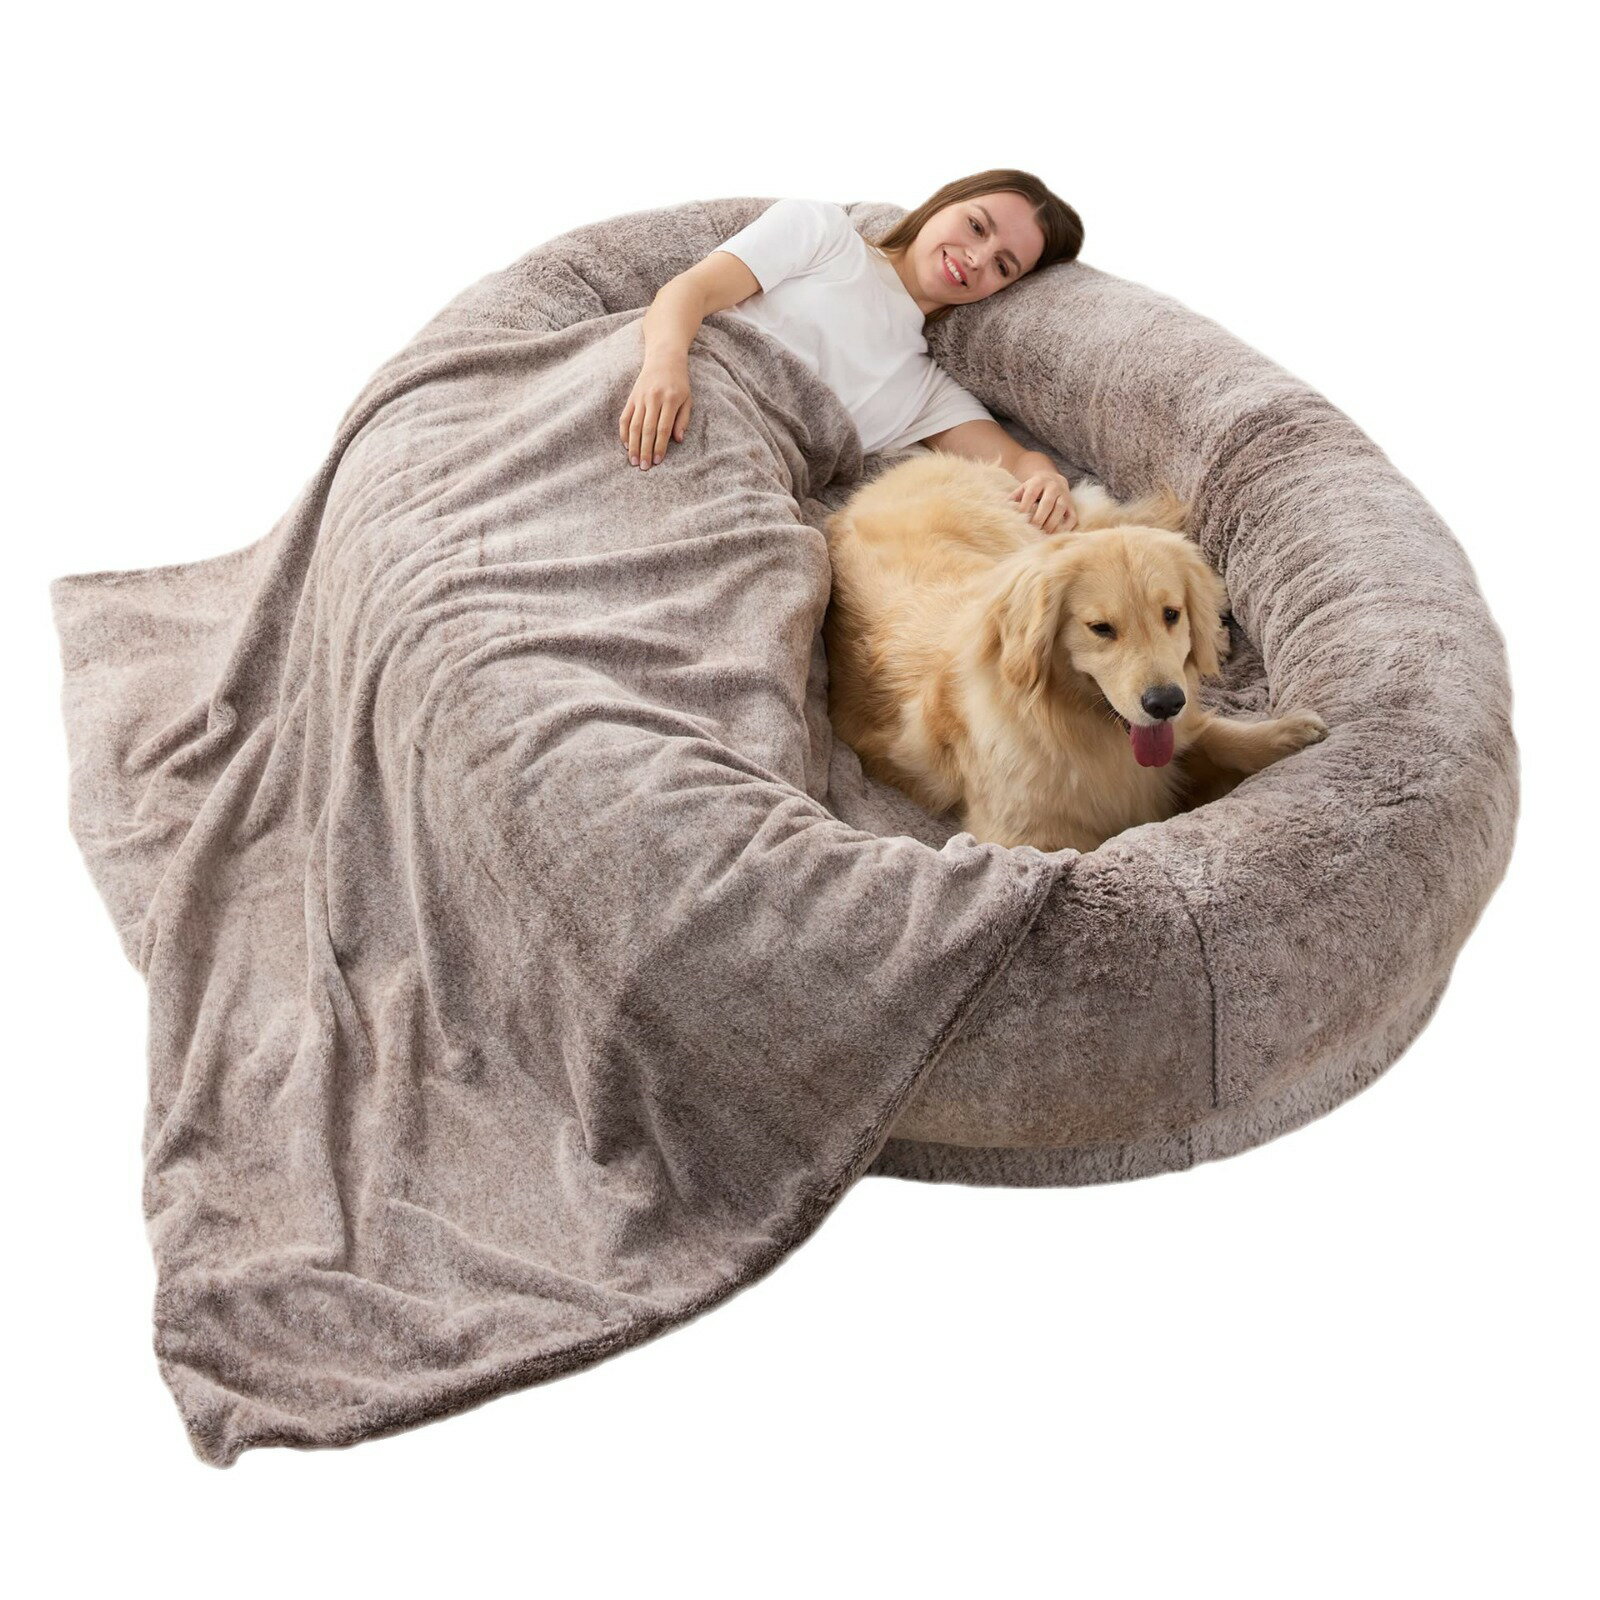 Human Dog Bed 大型人類狗床短毛絨人狗窩 冬天保暖可拆洗大狗床